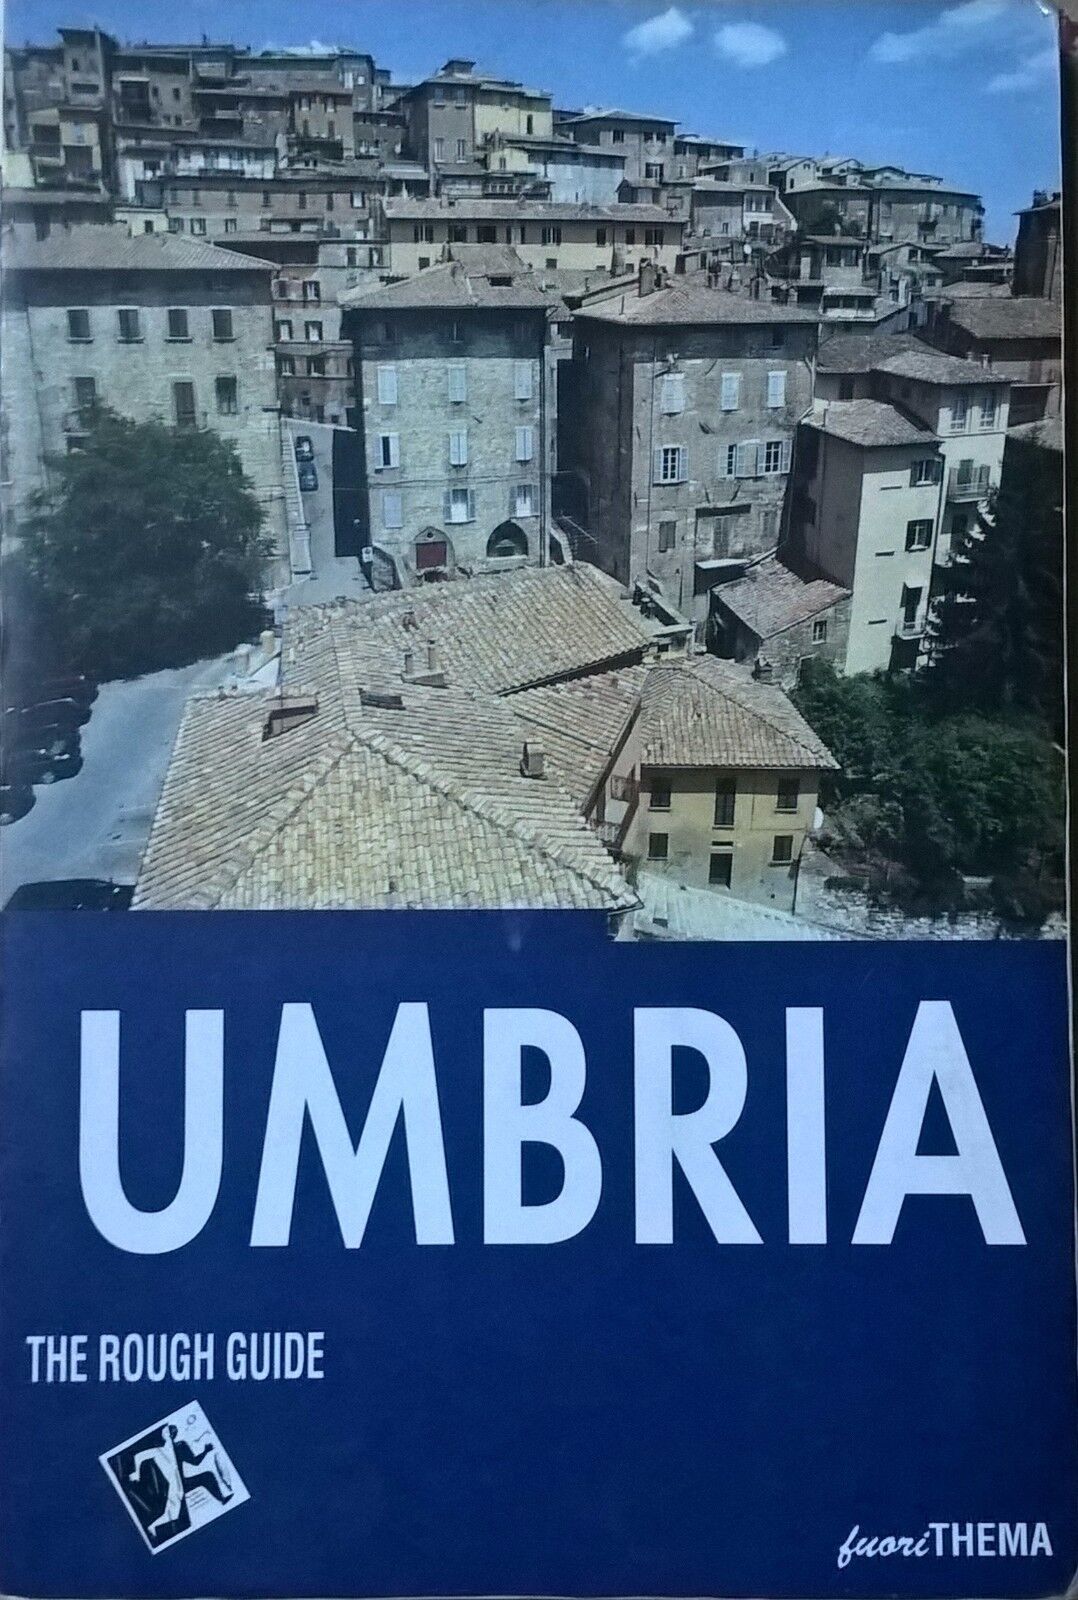 Umbria - The Rough Guide (Fuori Thema) Ca libro usato